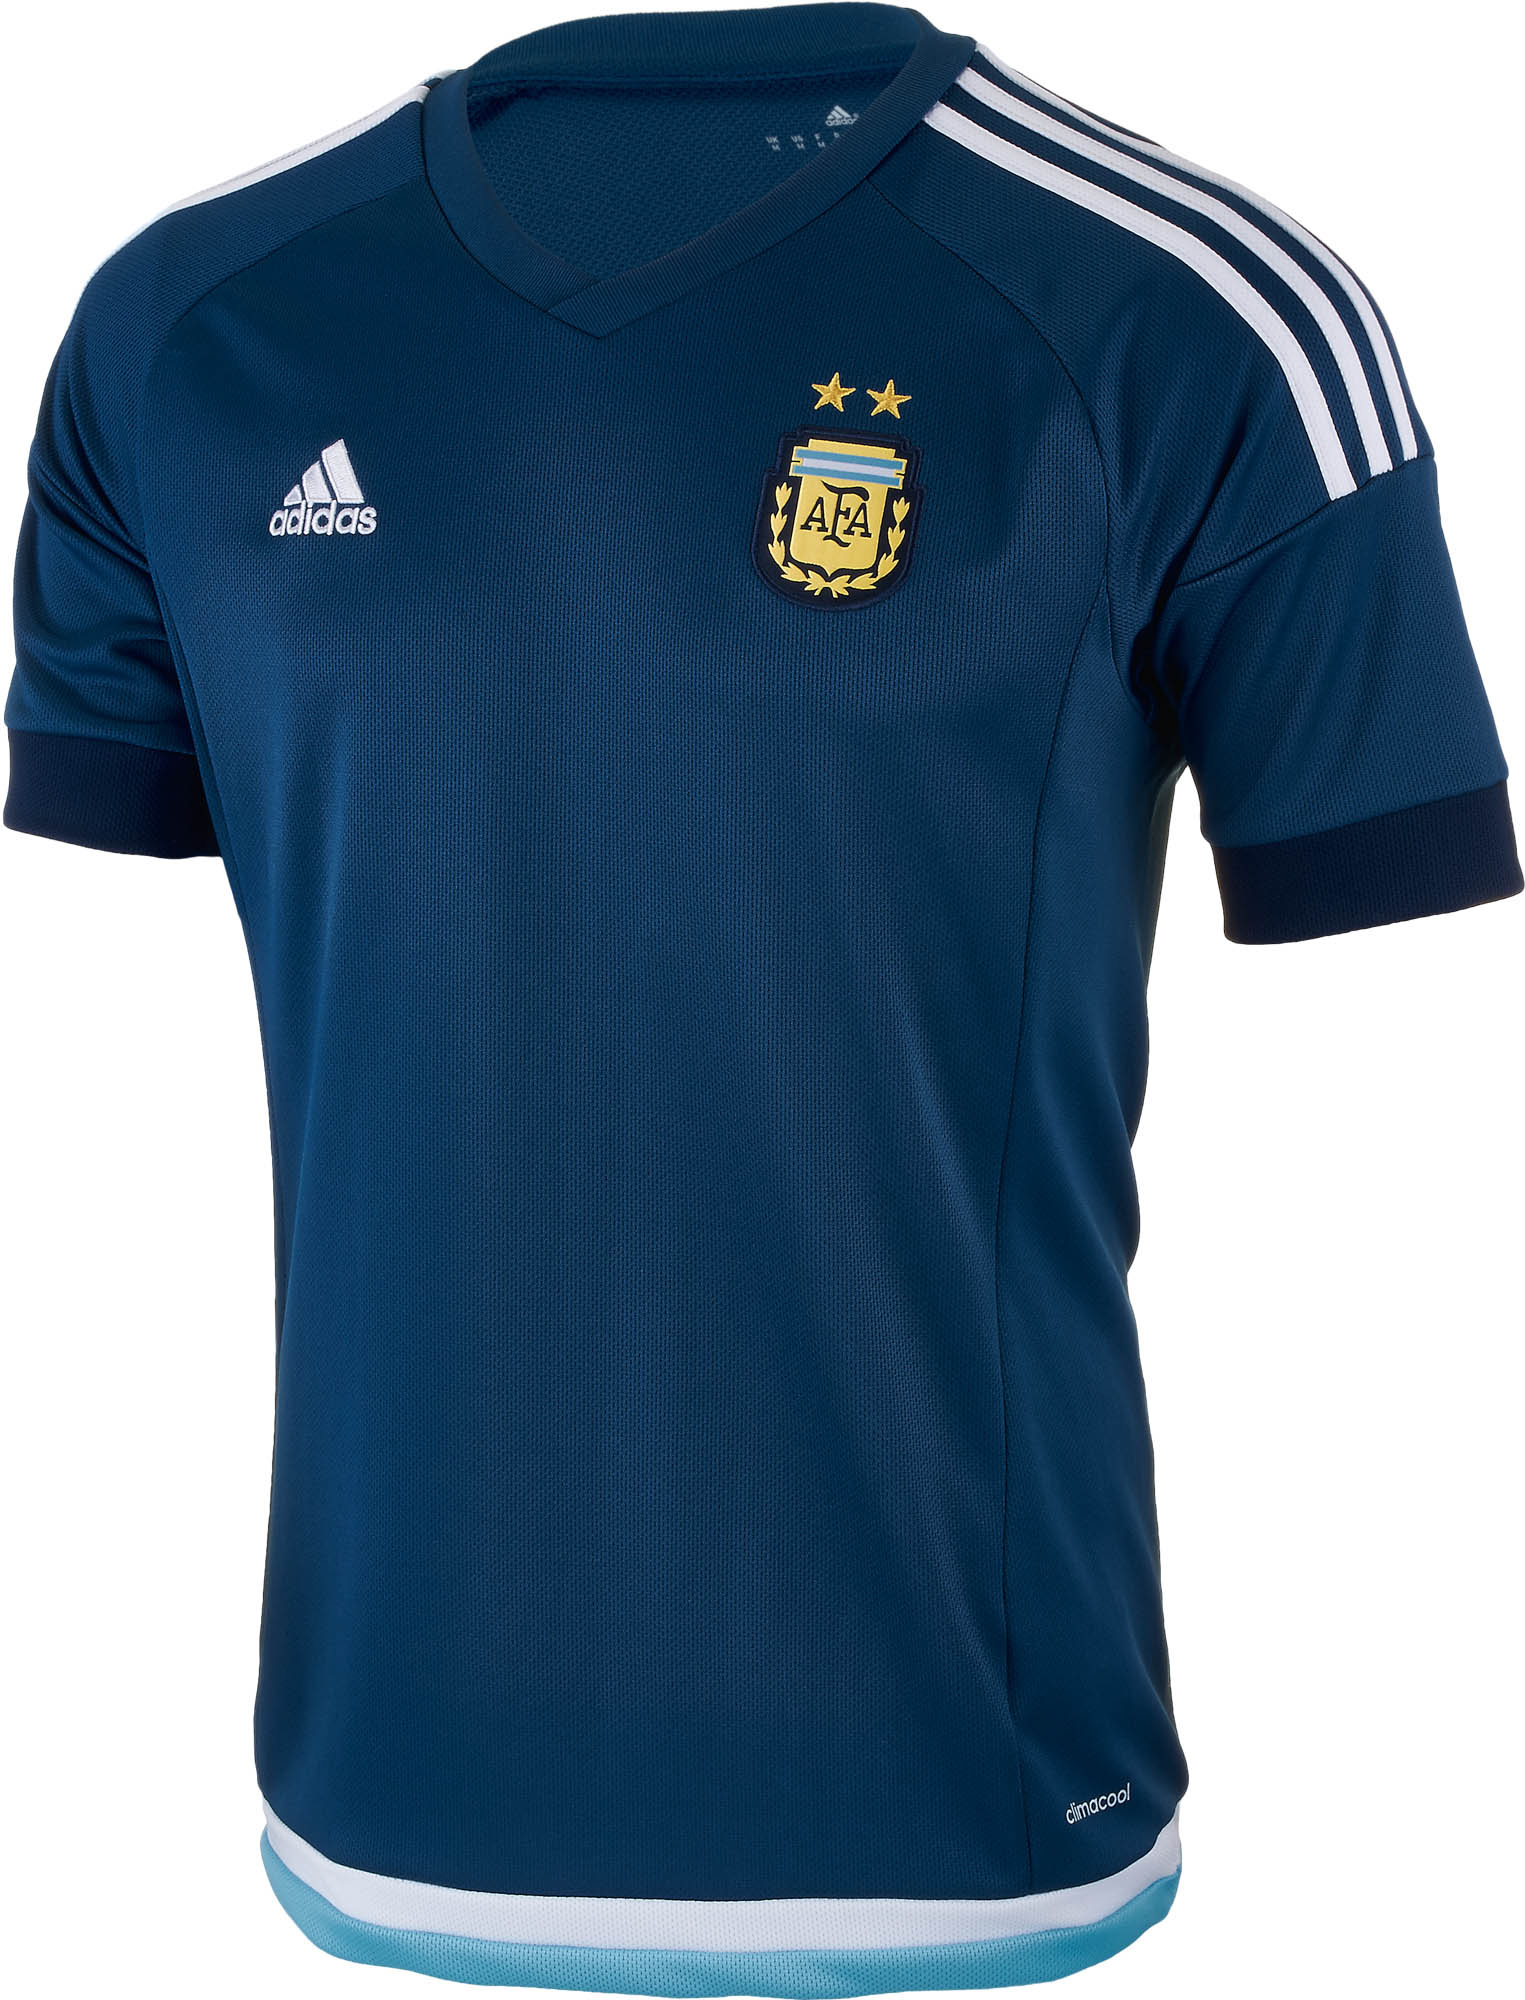 2015 adidas Argentina Away Jersey 